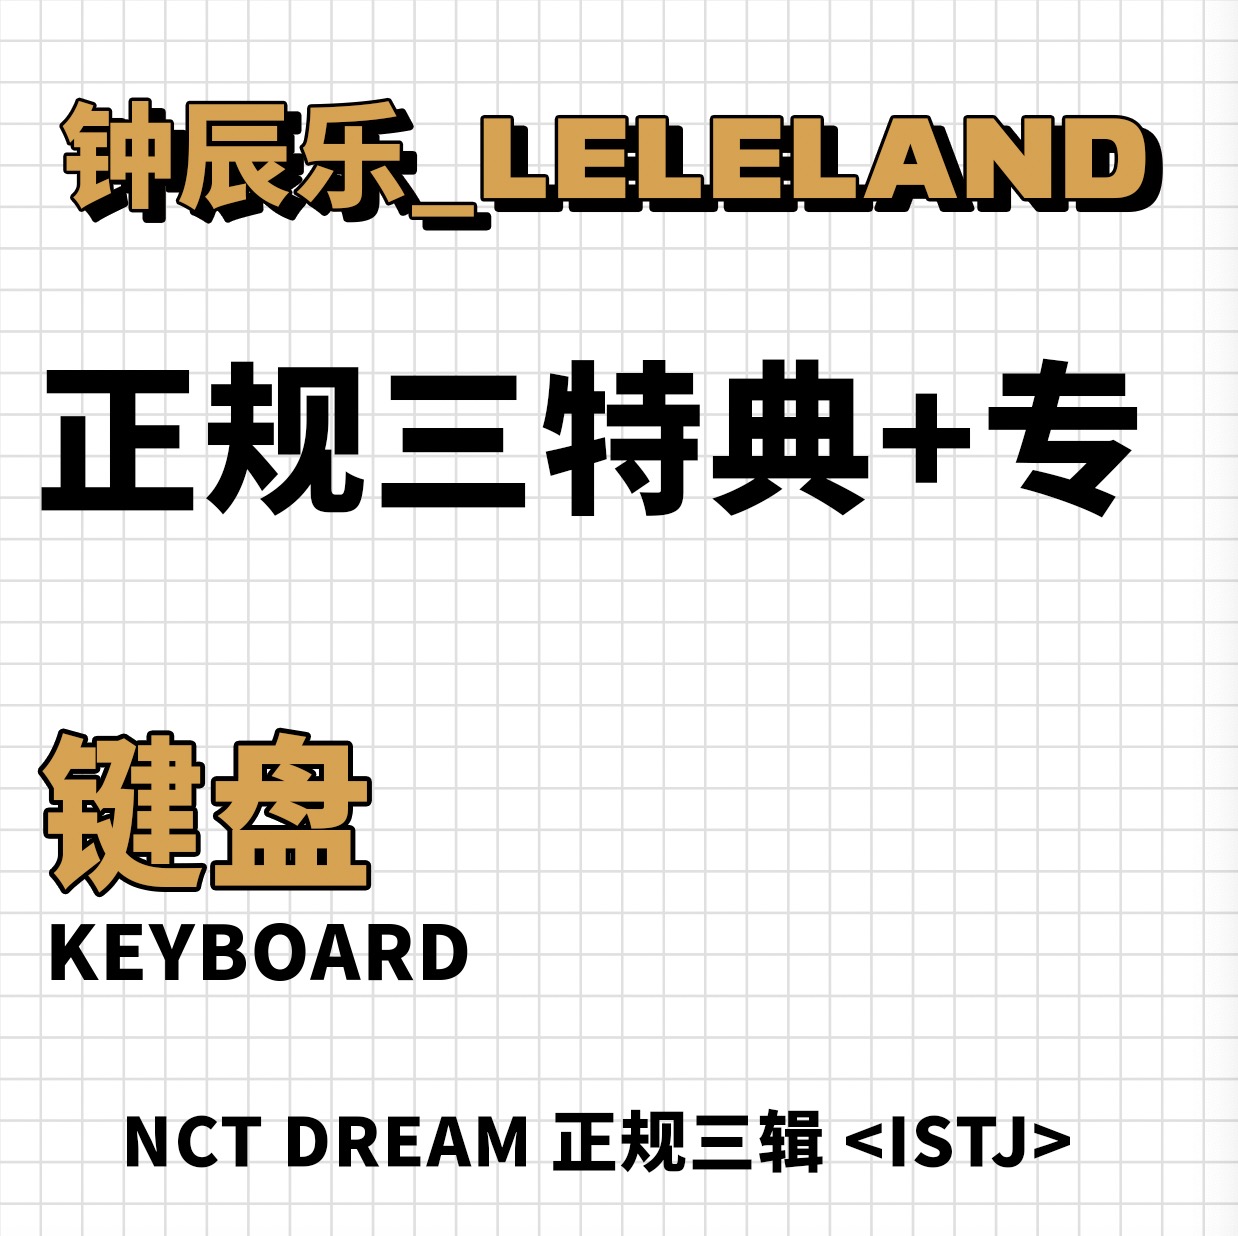 [全款 键盘特典专] NCT DREAM - 正规3辑 [ISTJ]_钟辰乐吧_ChenLeBar